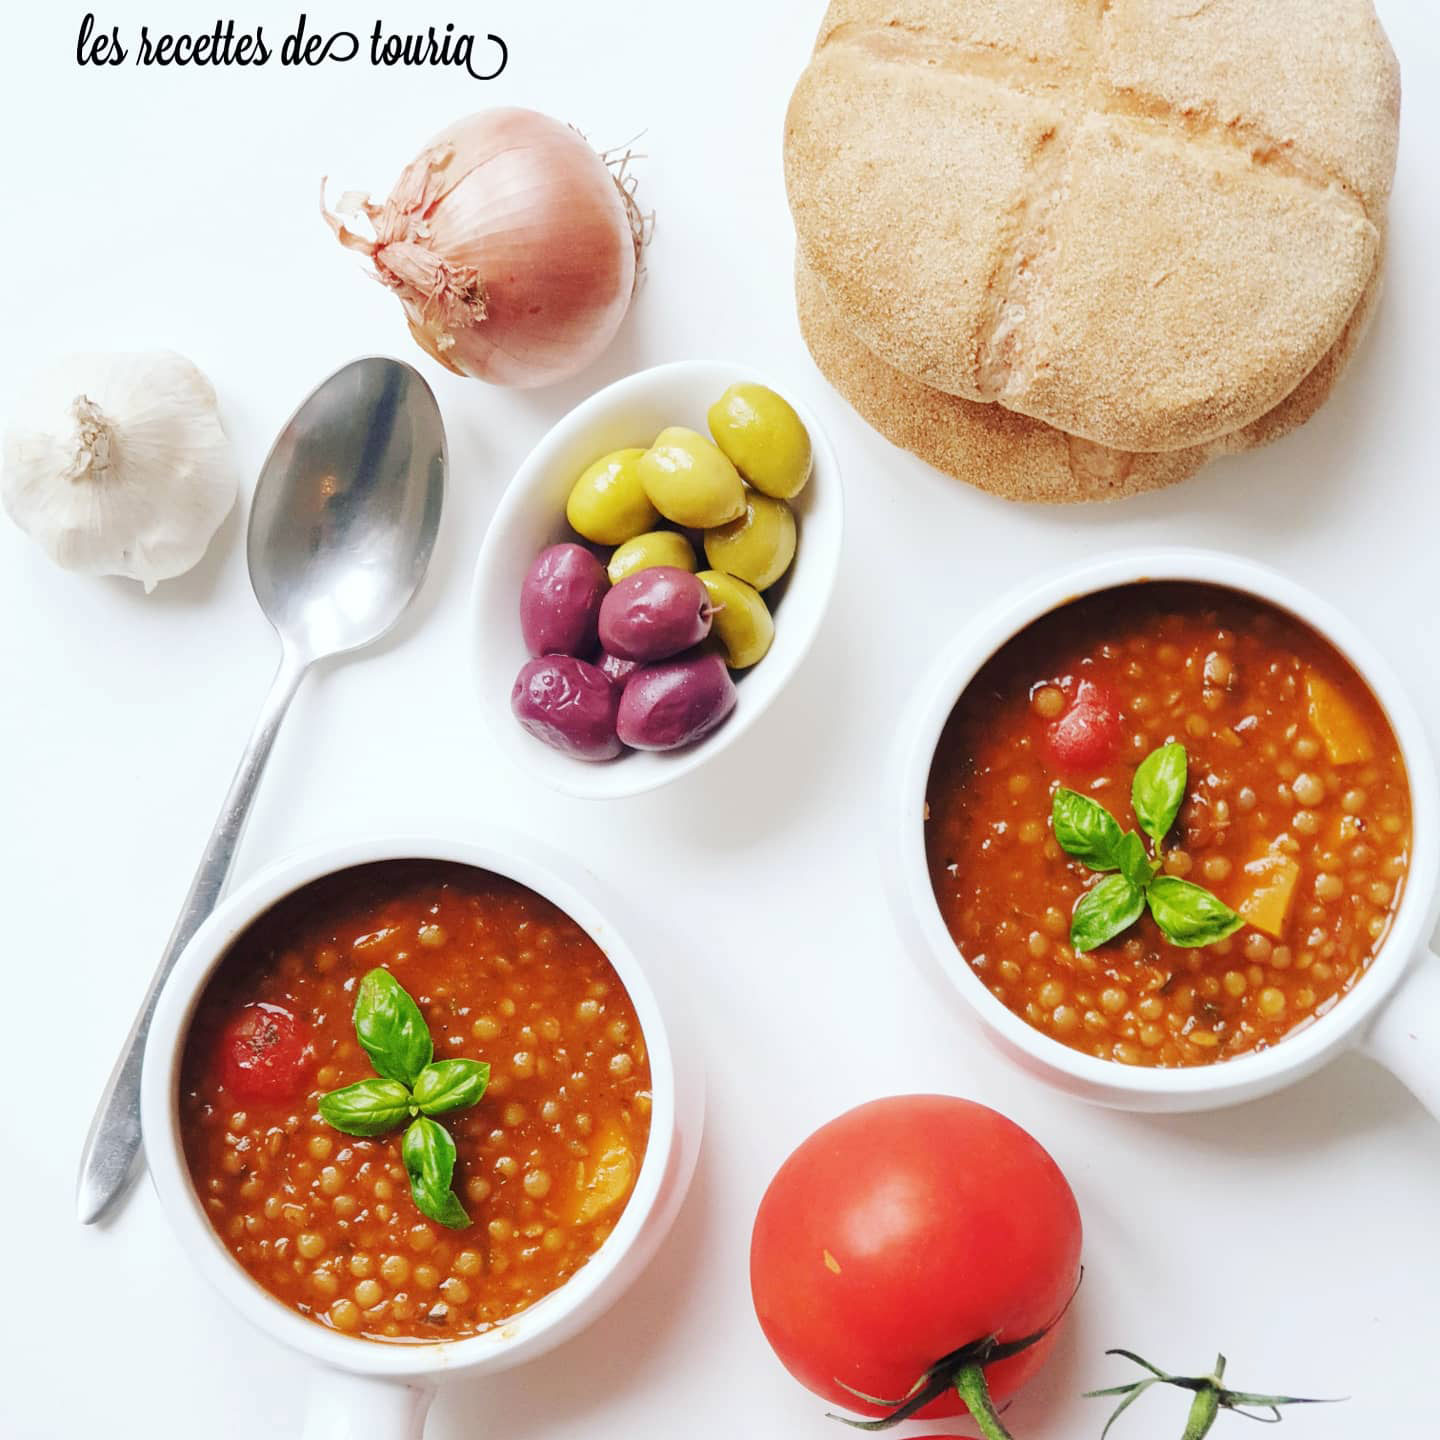 Lentilles-recette-salé-catégorie-cuisine-du-maghreb----Lesrecettesdetouria---les-recettes-de-touria